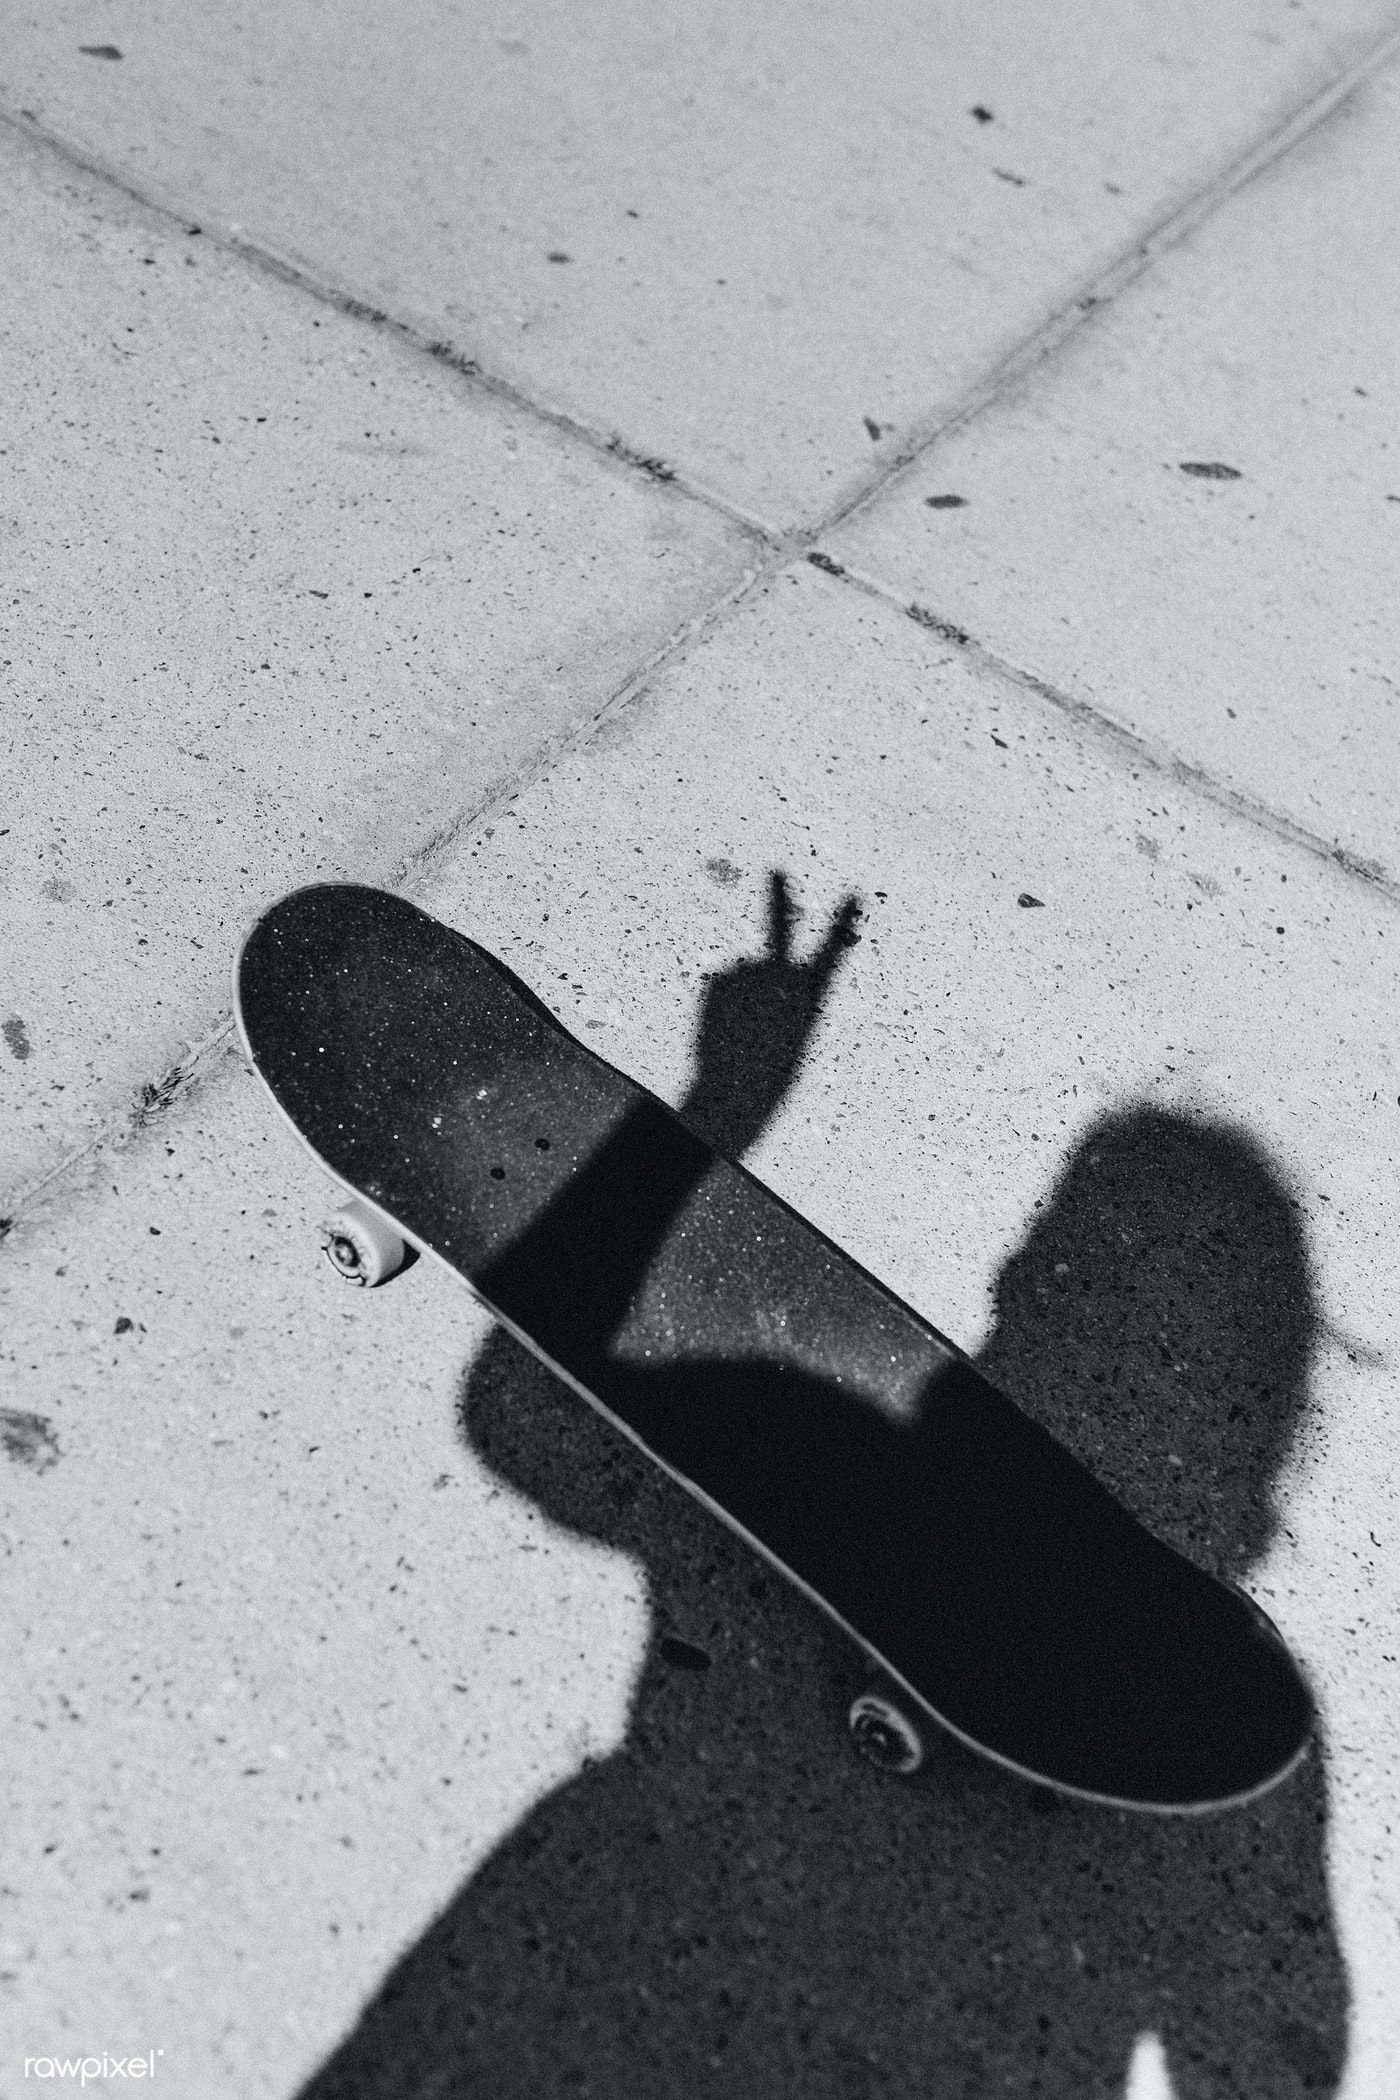 Shadow of a skateboarder on the concrete street / Felix. Image noir et blanc, Paysage noir et blanc, Photographie d'art noir